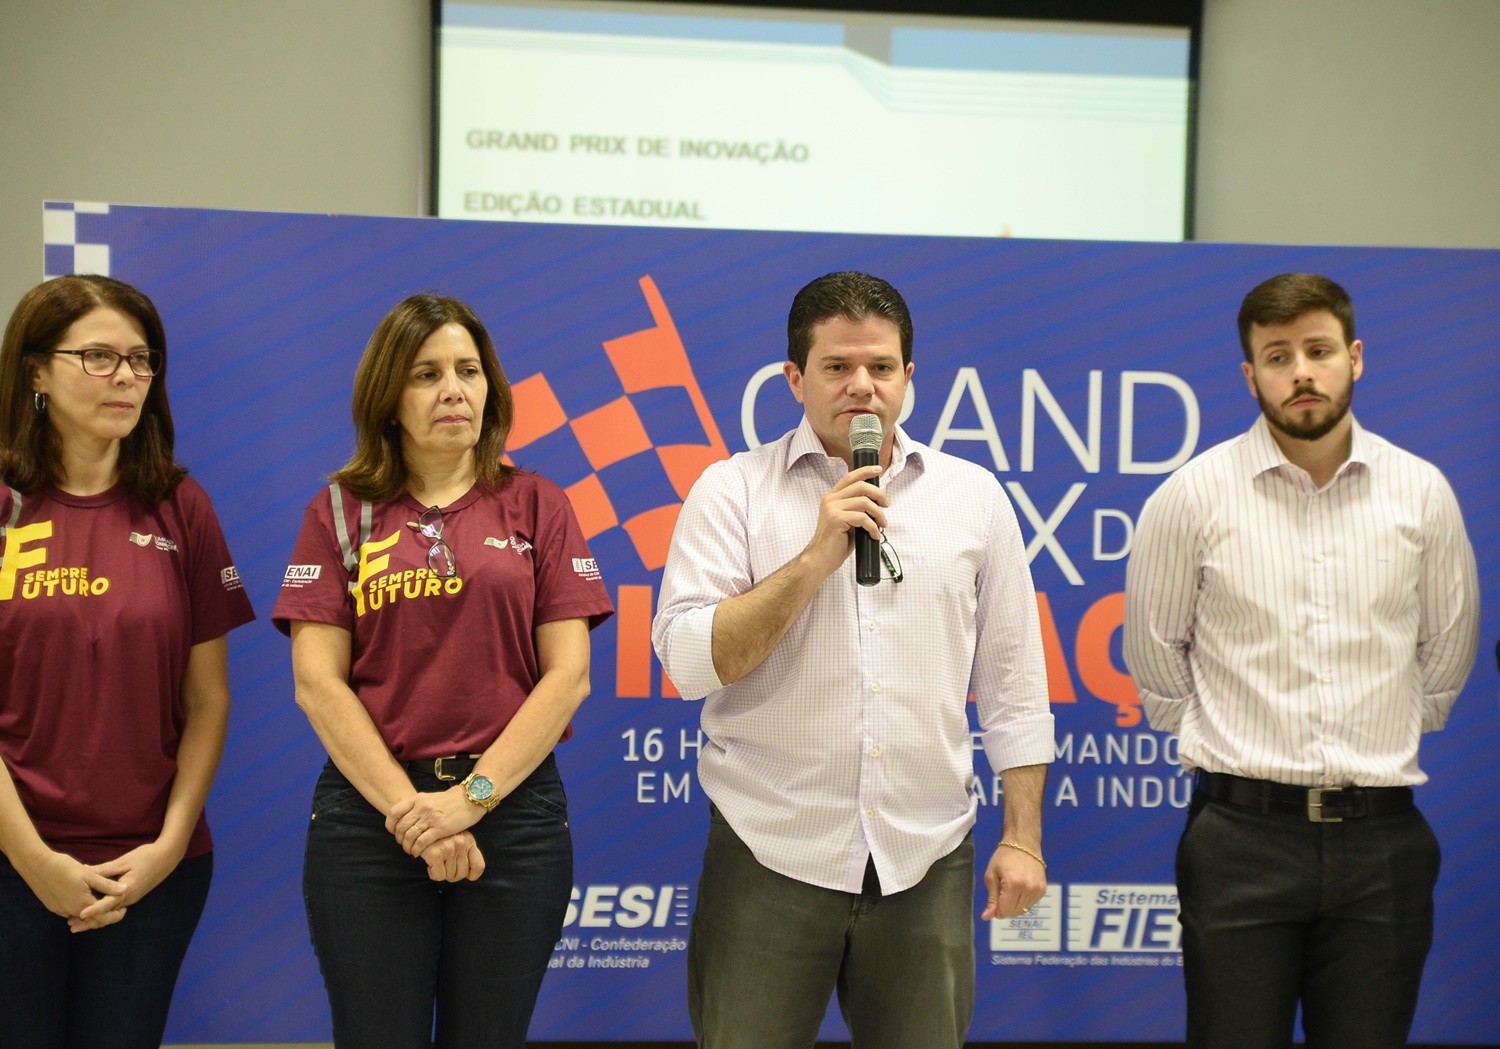 Senai Piauí inicia Gran Prix de Inovação